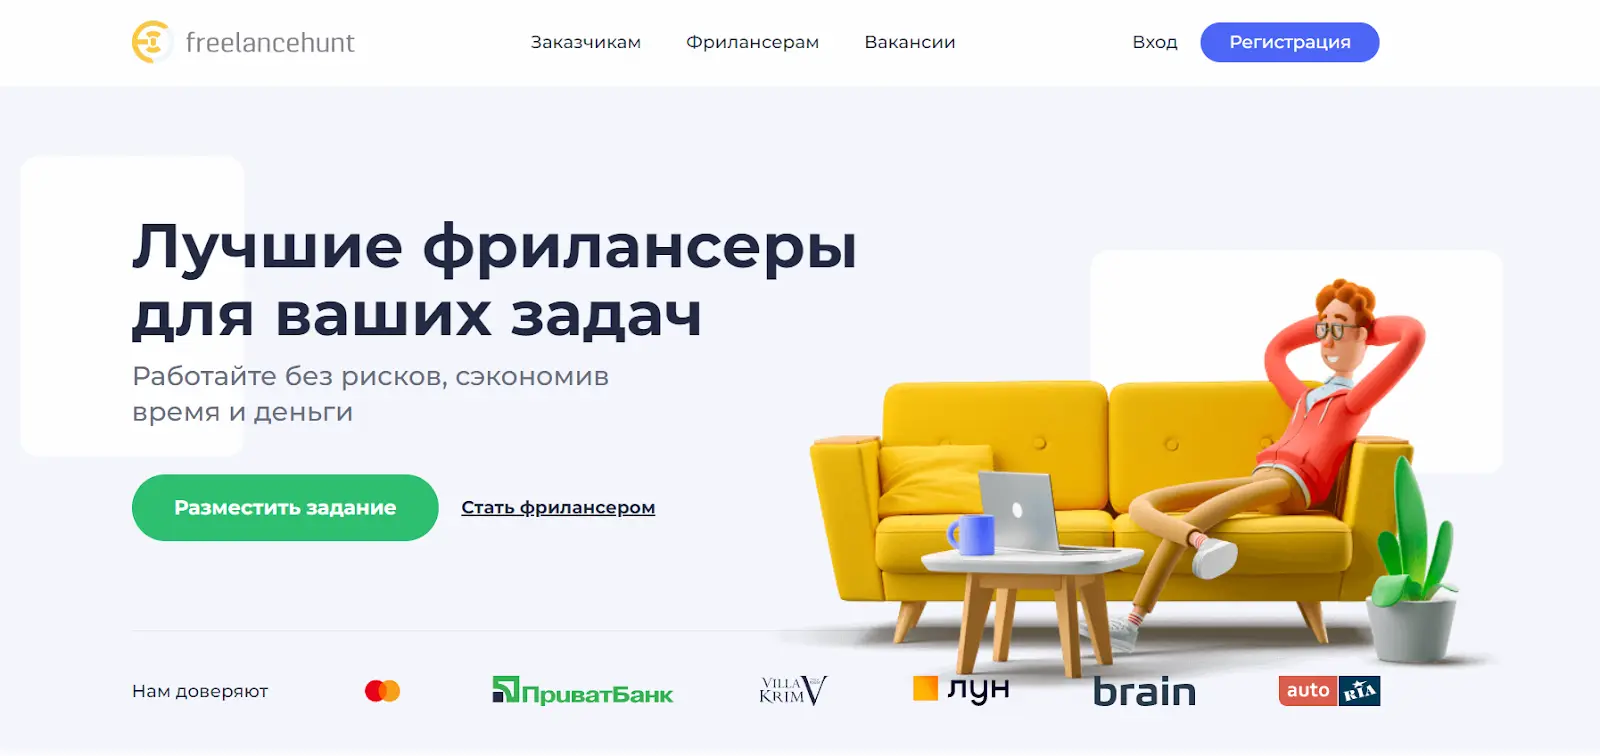 Украинская фриланс биржа Freelancehunt.com